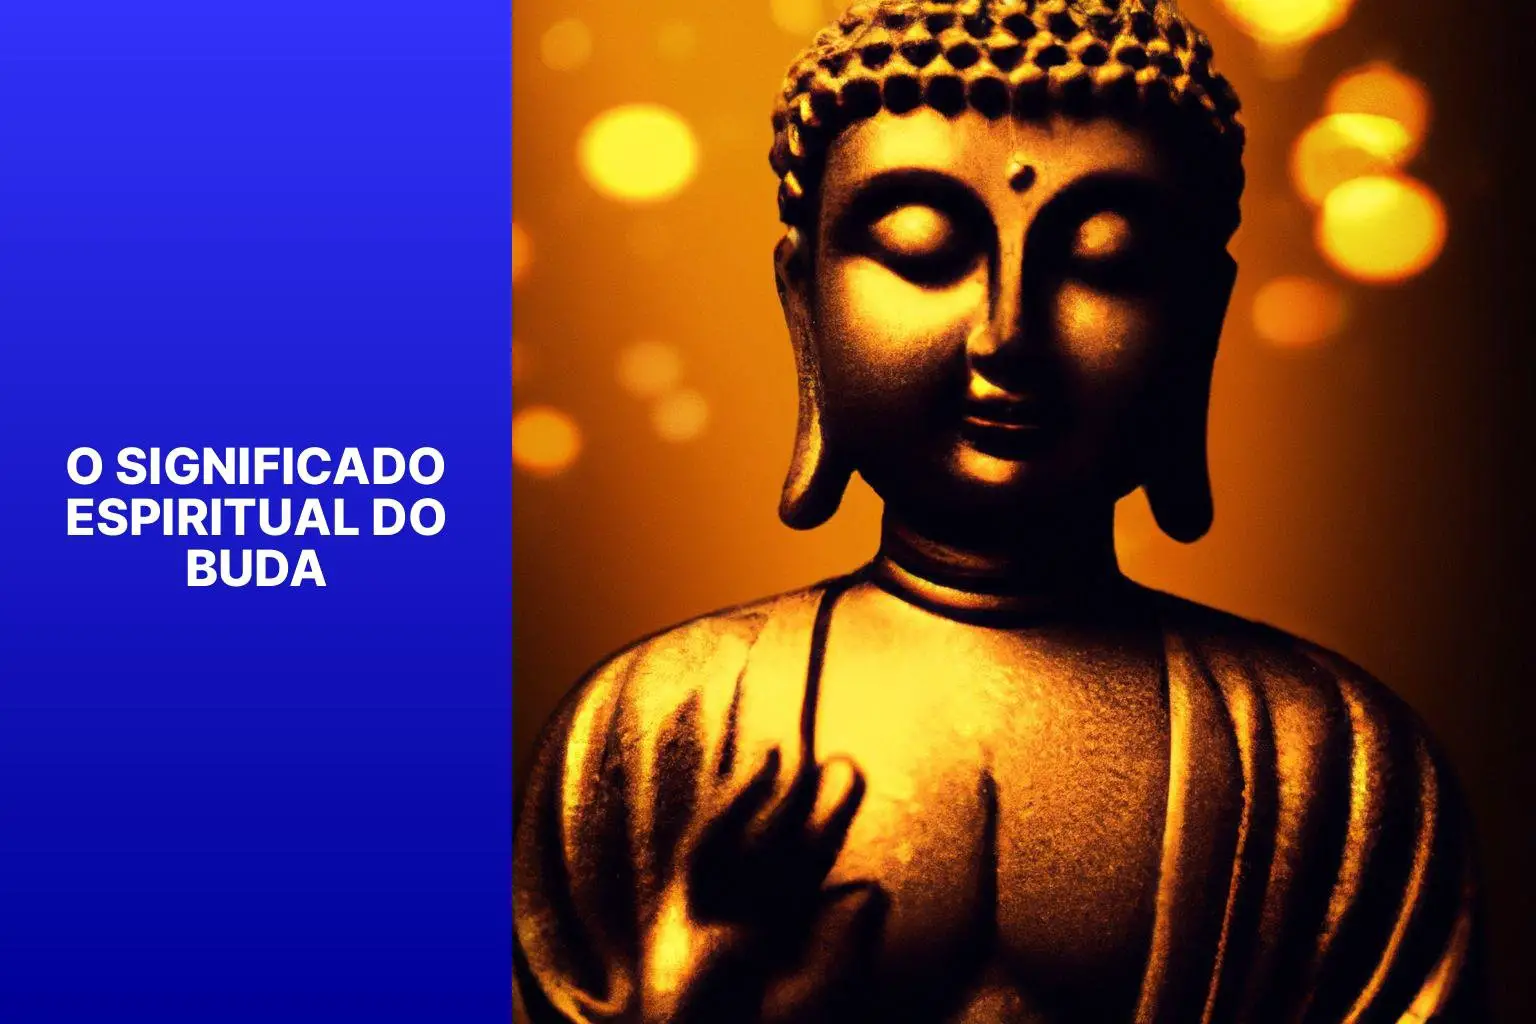 O significado espiritual do Buda - Buda Significado Espiritual 